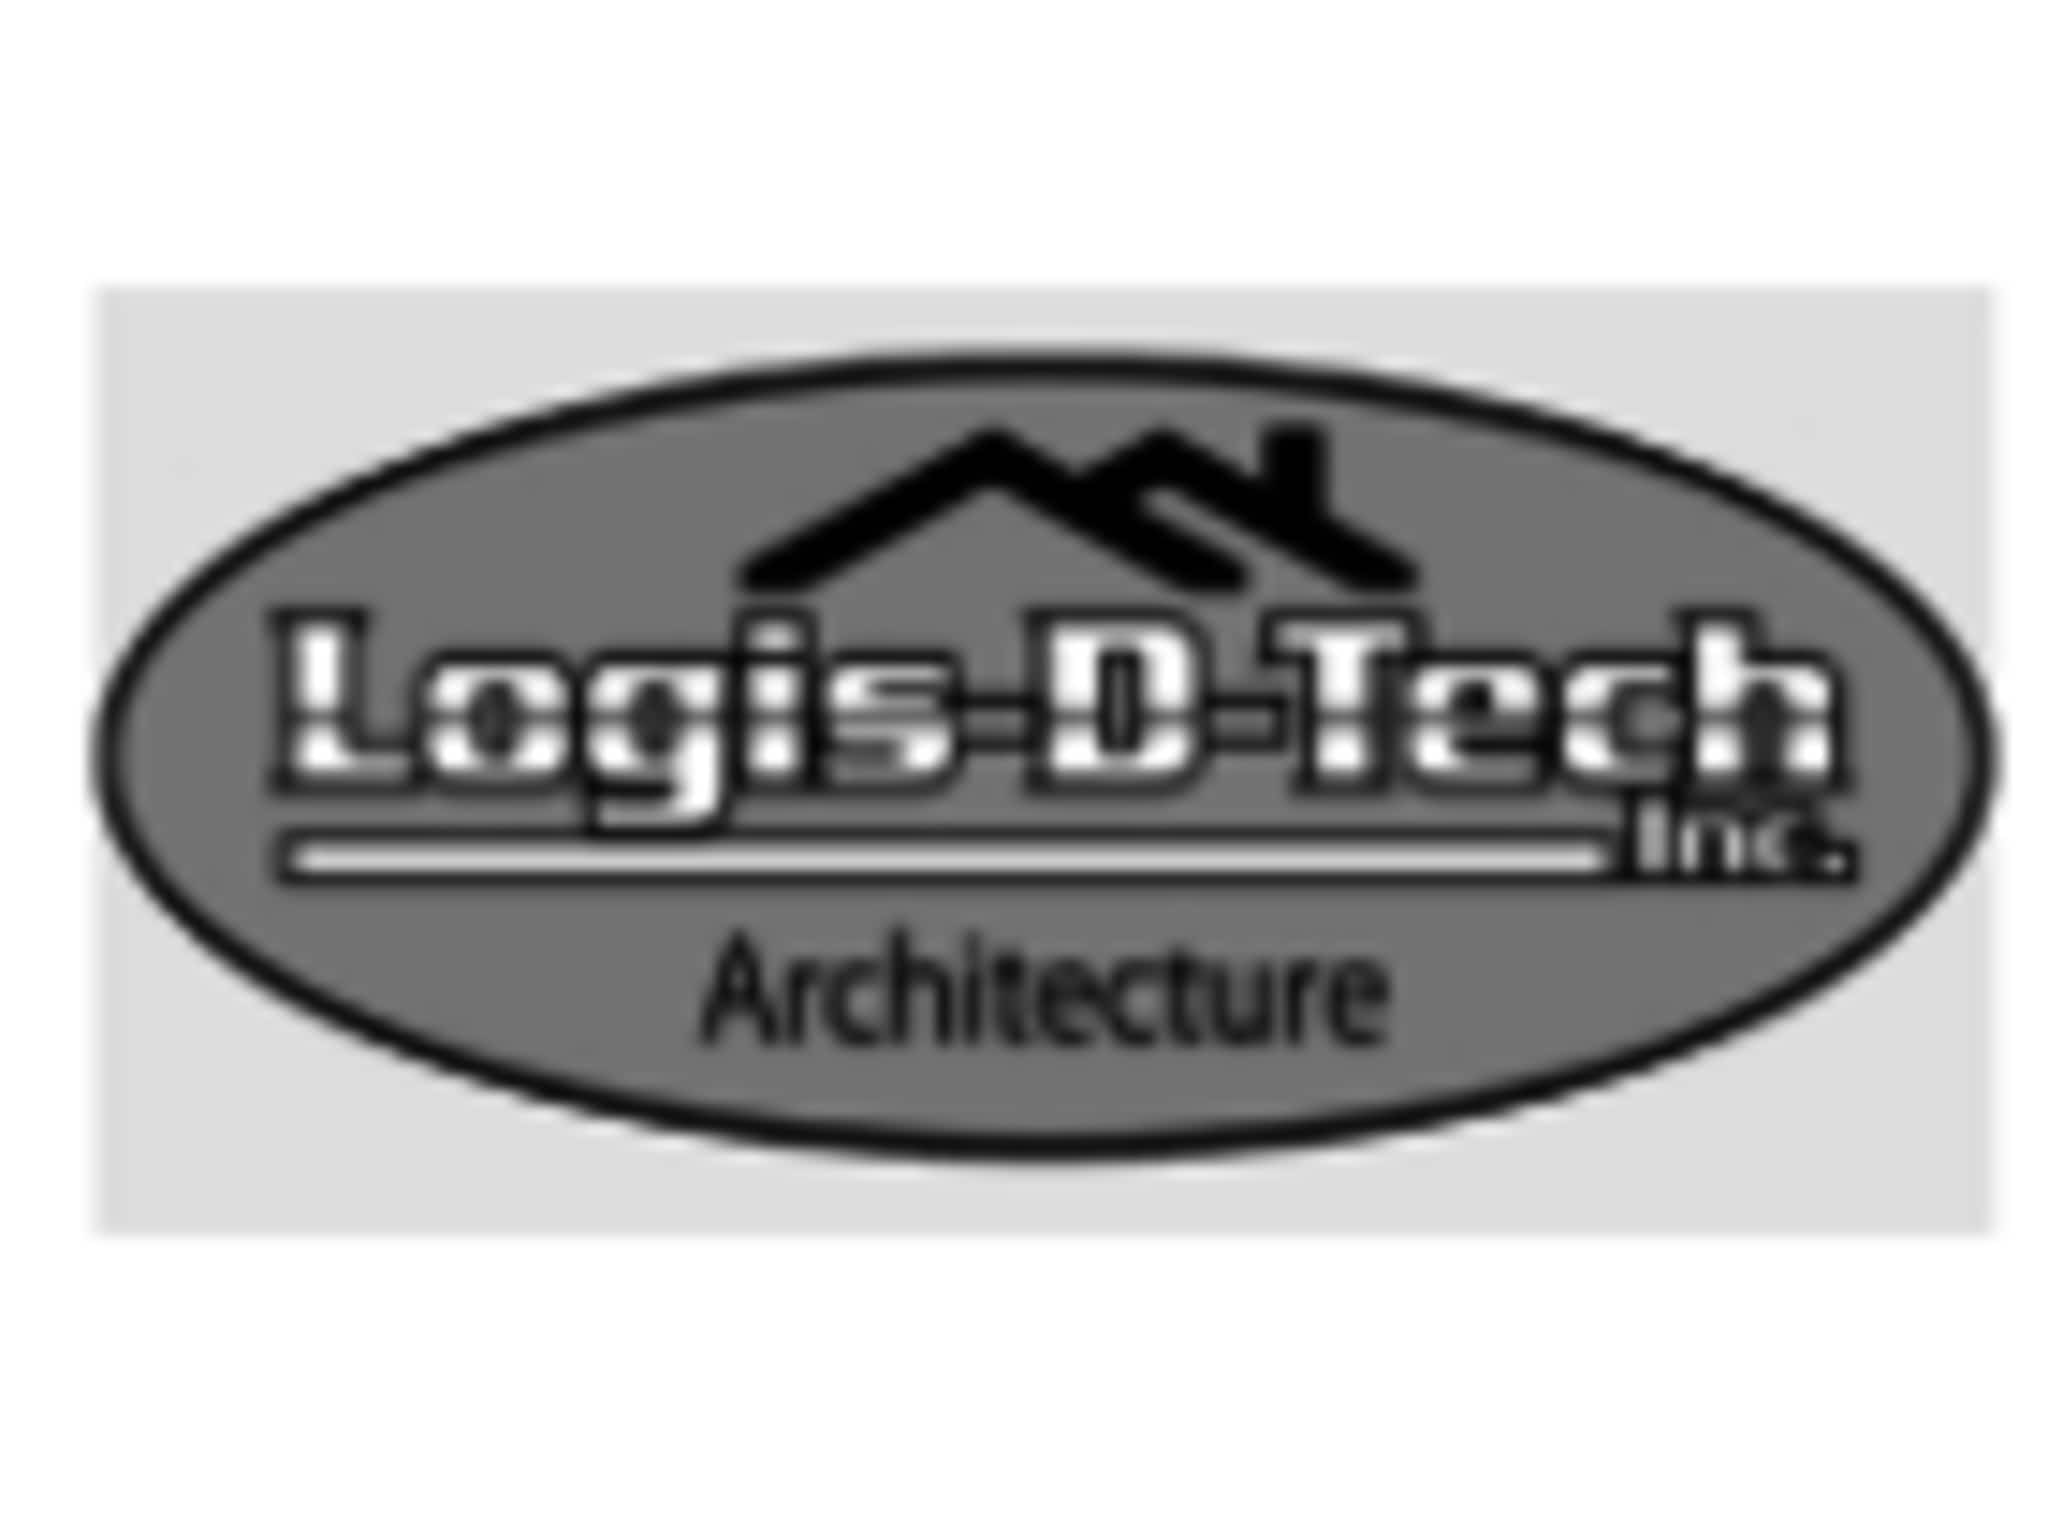 photo Les plans Logis-D-Tech